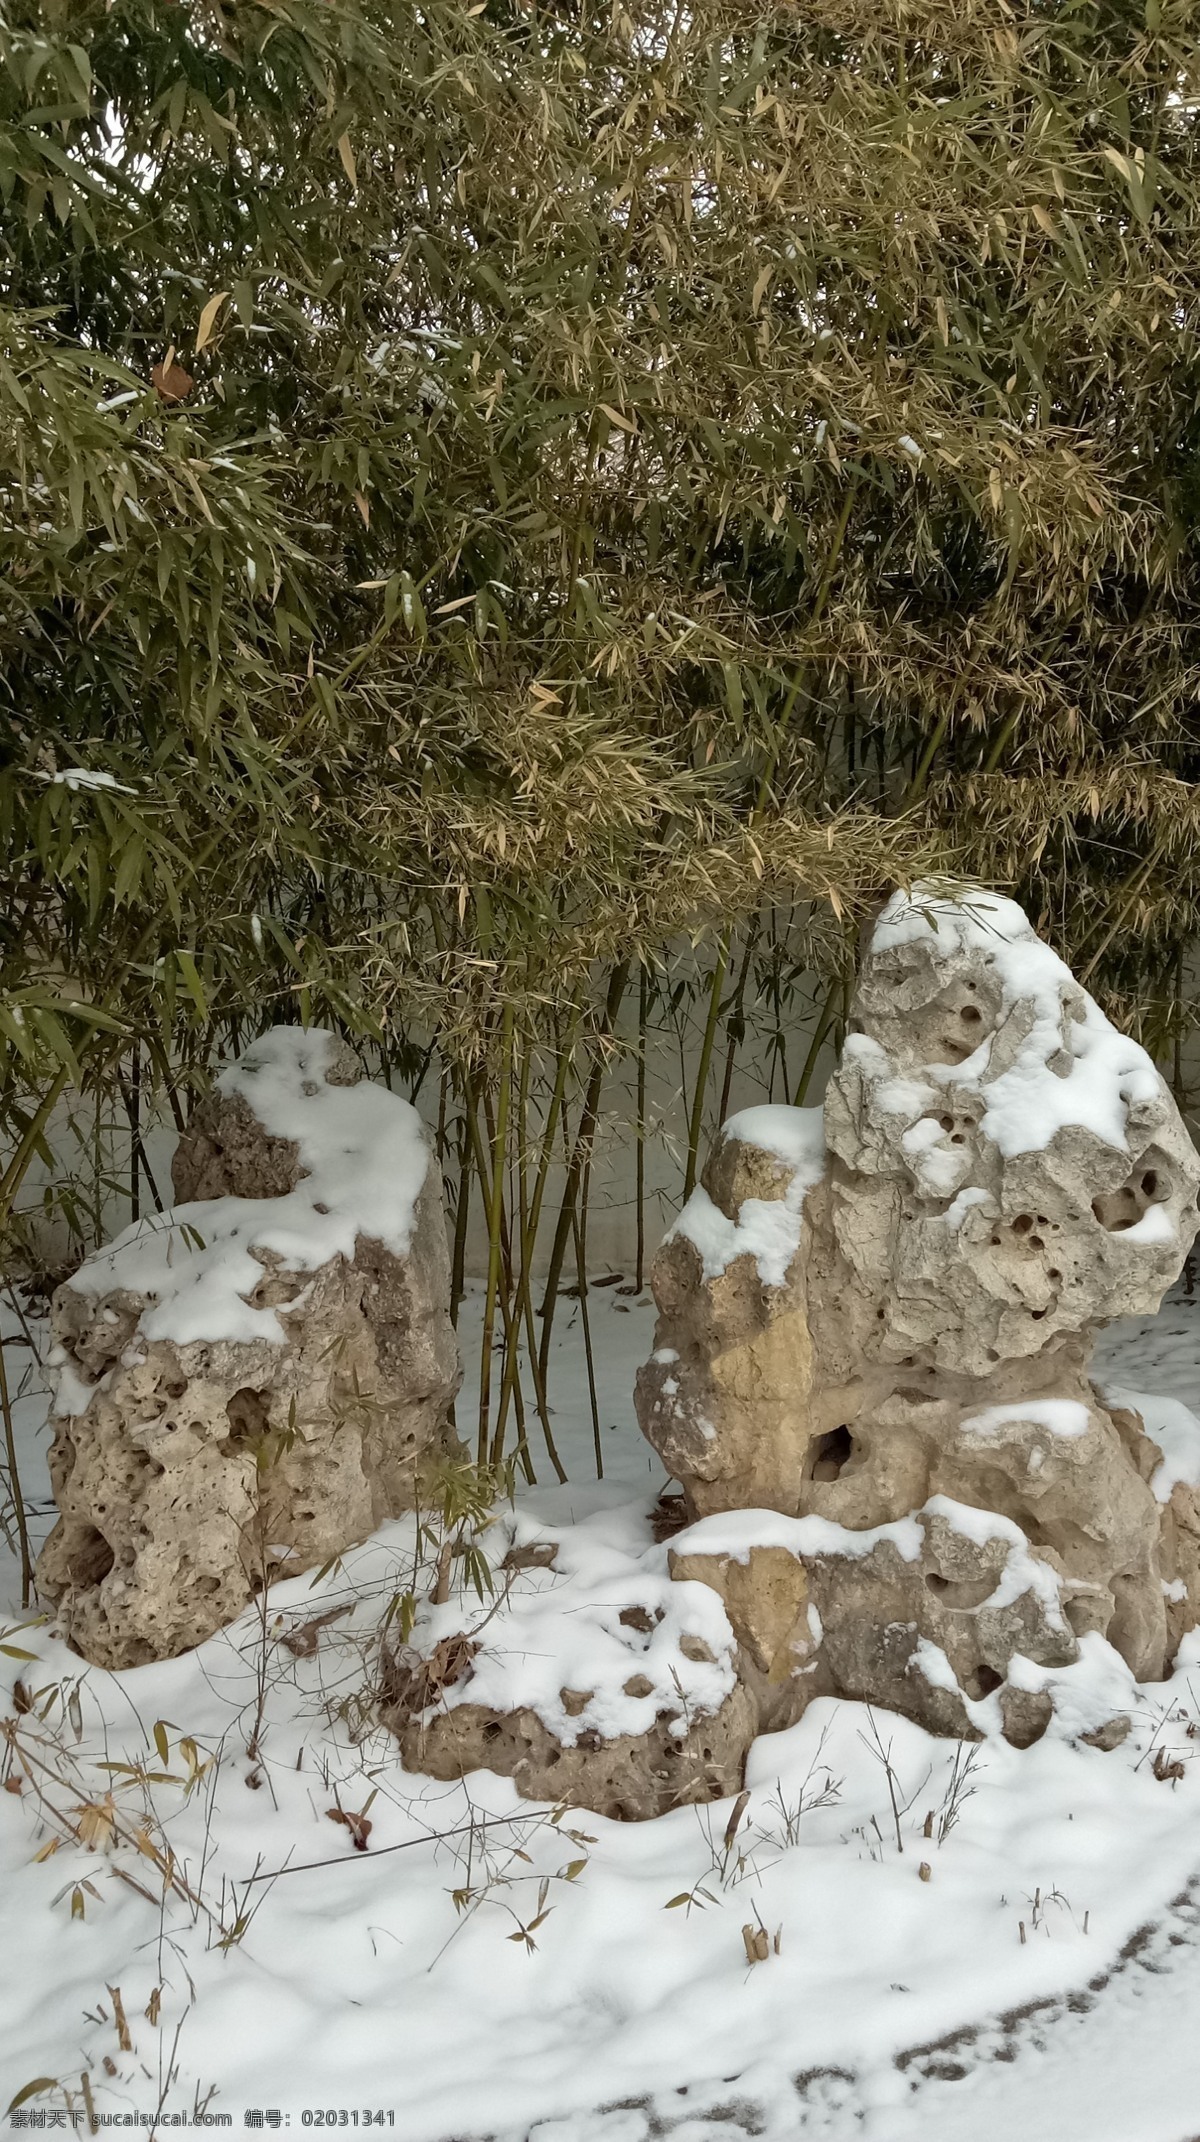 怪石 石头 坏石 雪 雪景 冬天 下雪 竹子 竹林 竹林雪景 假山 大美图片 旅游摄影 自然风景